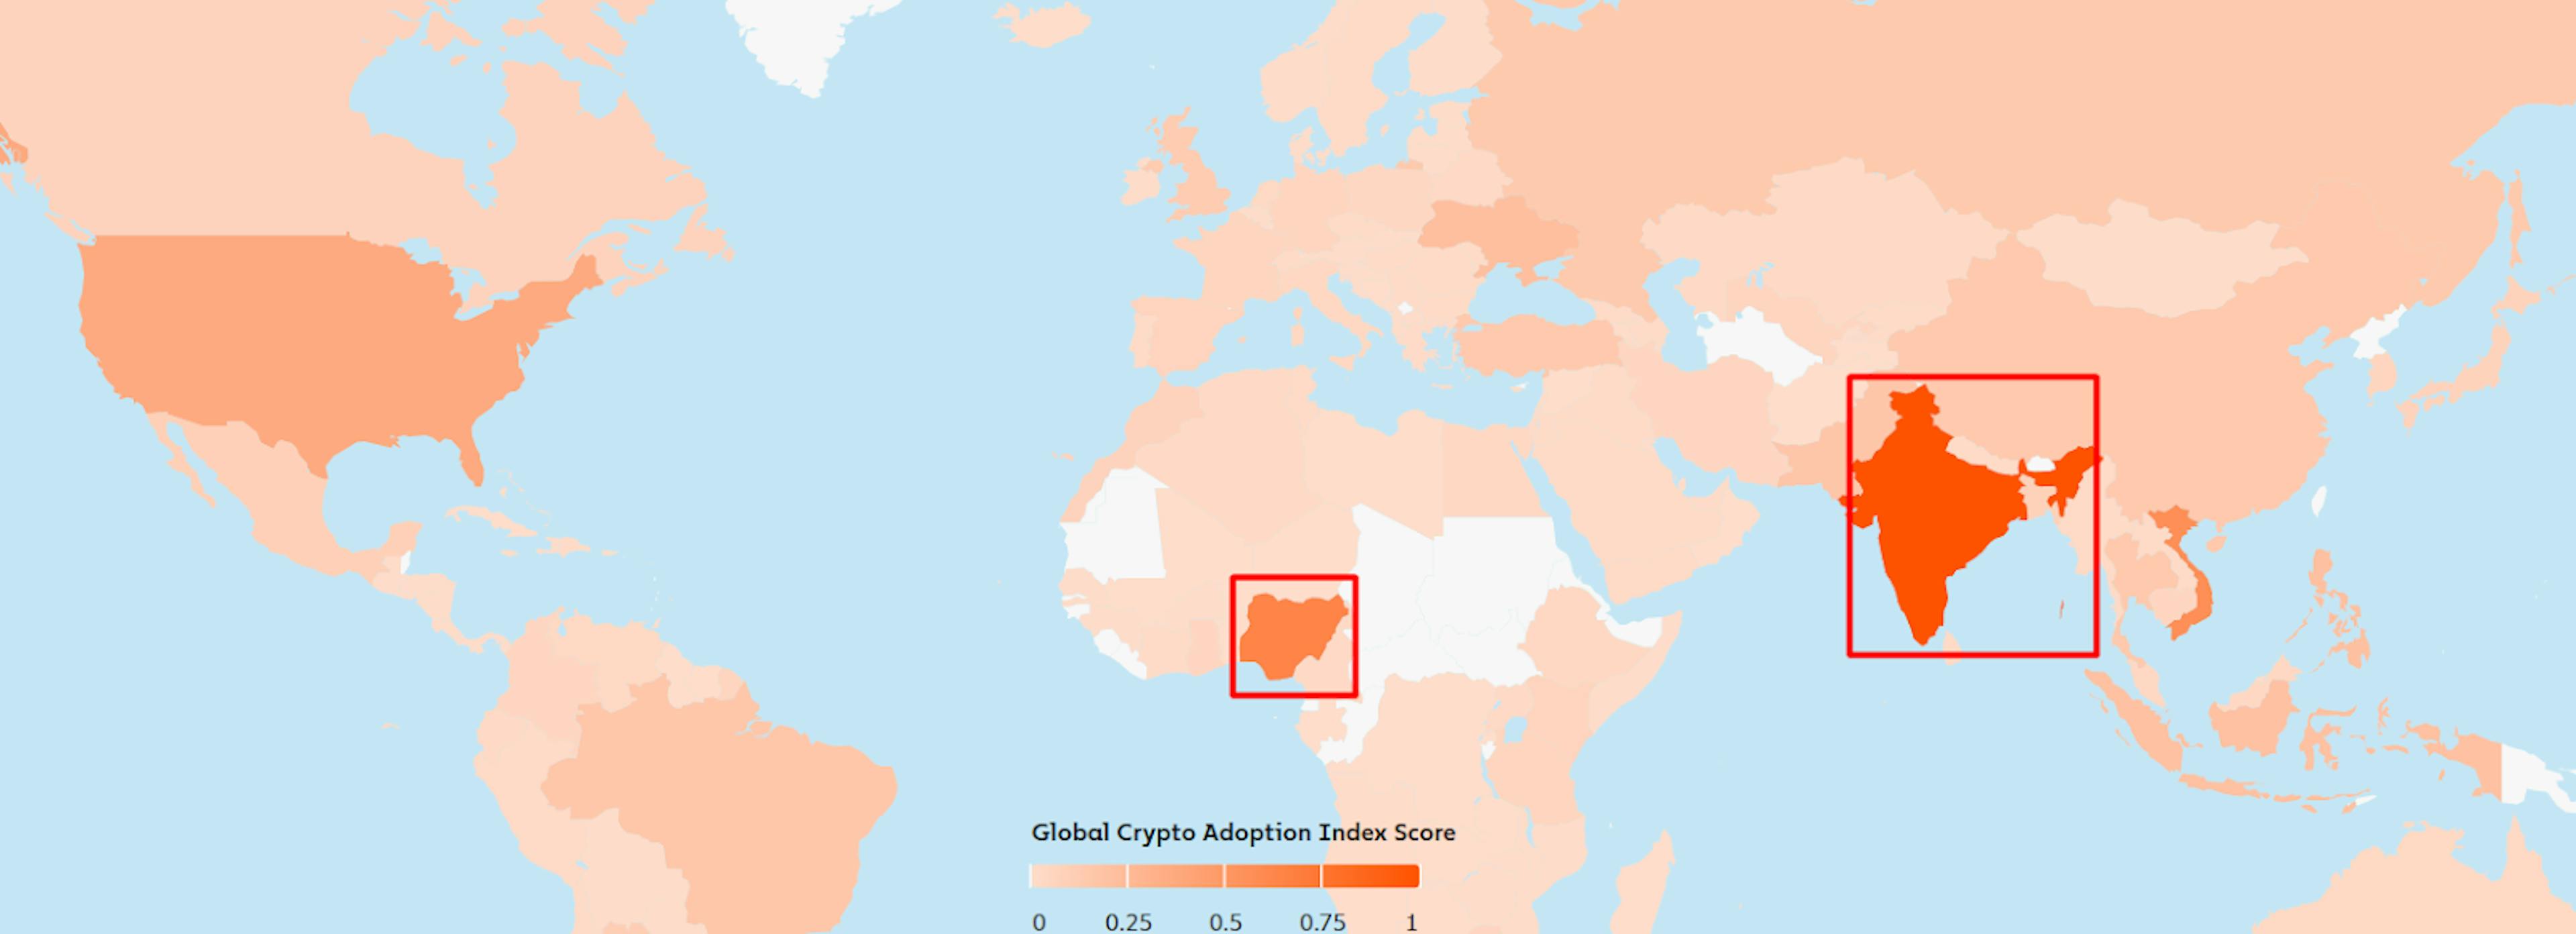 来源：https://www.chainaanalysis.com/blog/2023-global-crypto-adoption-index/#top20